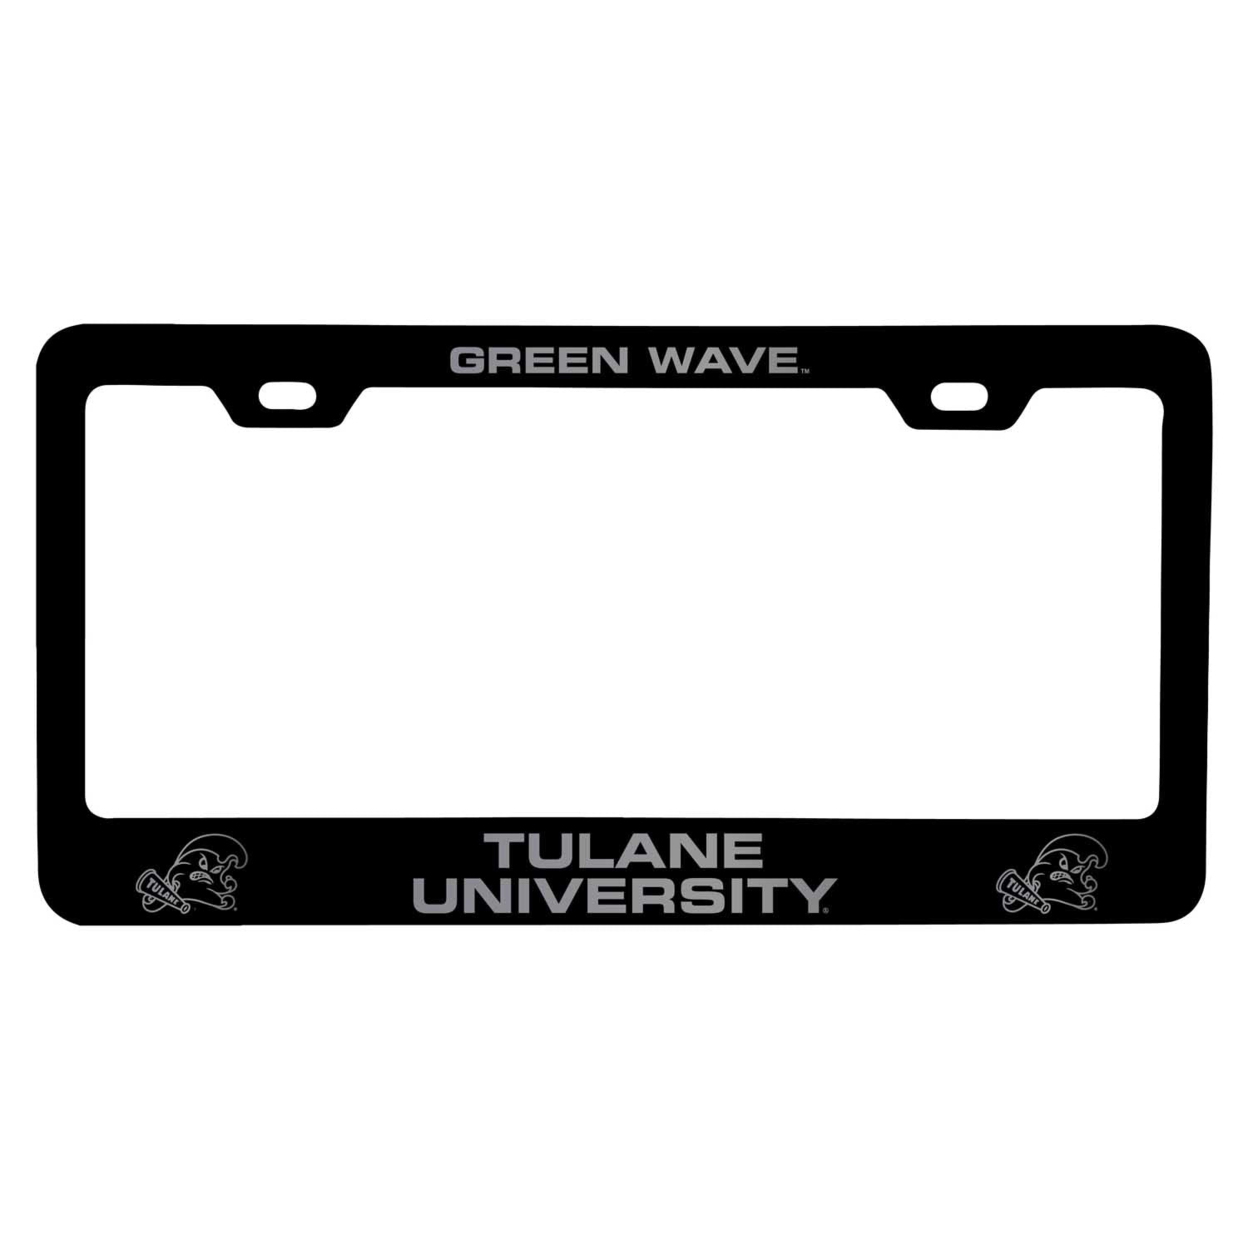 Tulane University Green Wave Laser Engraved Metal License Plate Frame - Choose Your Color - Black